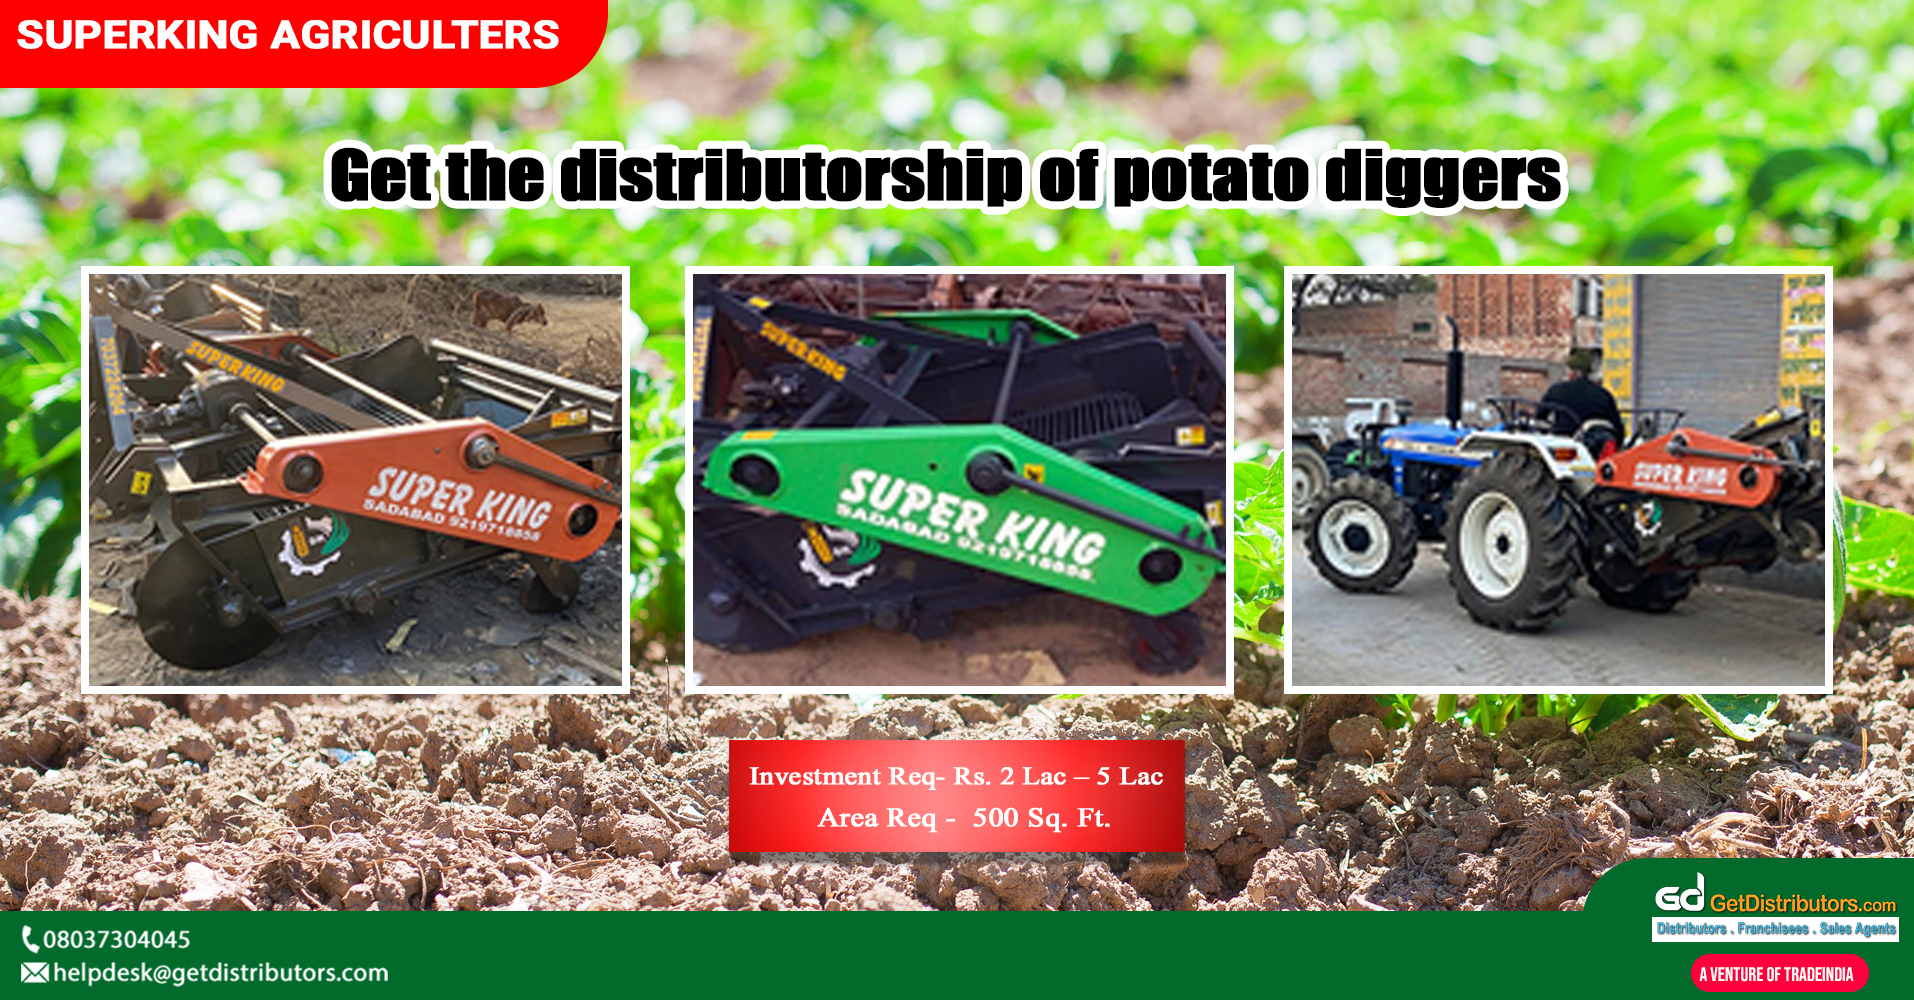 High-grade potato diggers for distribution